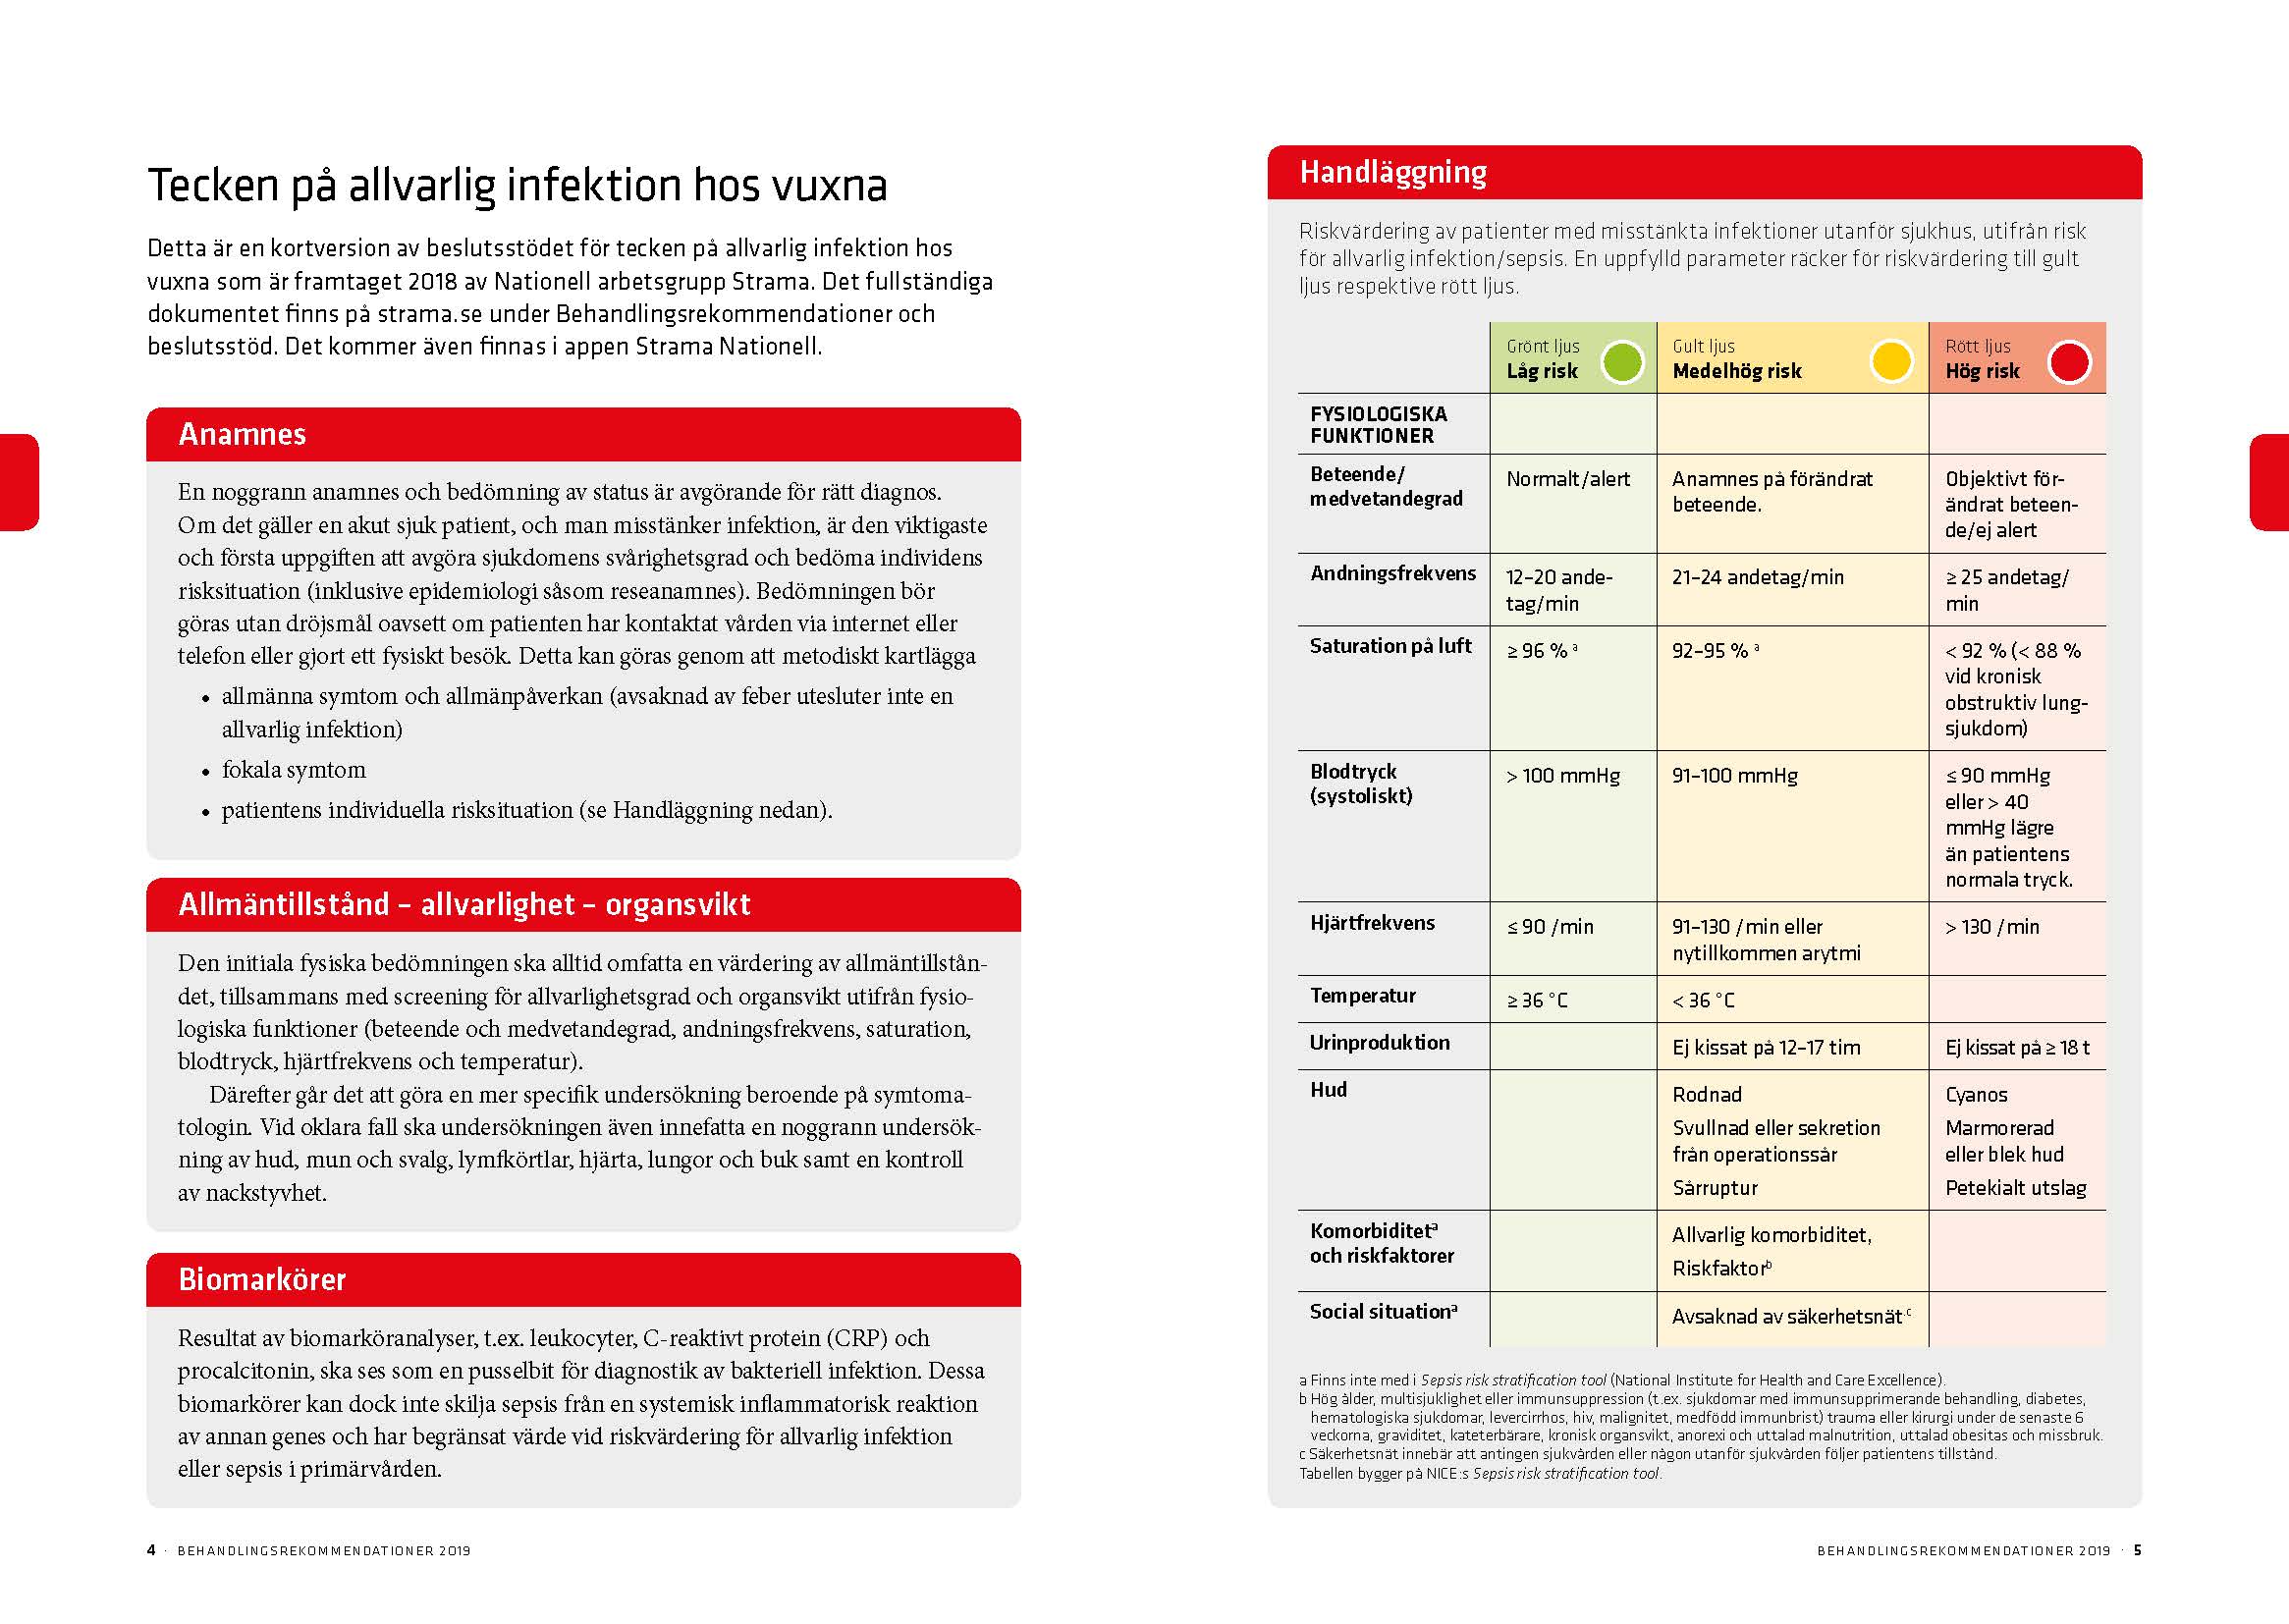 Behandlingsrekommendationer för vanliga infektioner i öppenvård. ETC kommunikation 2020